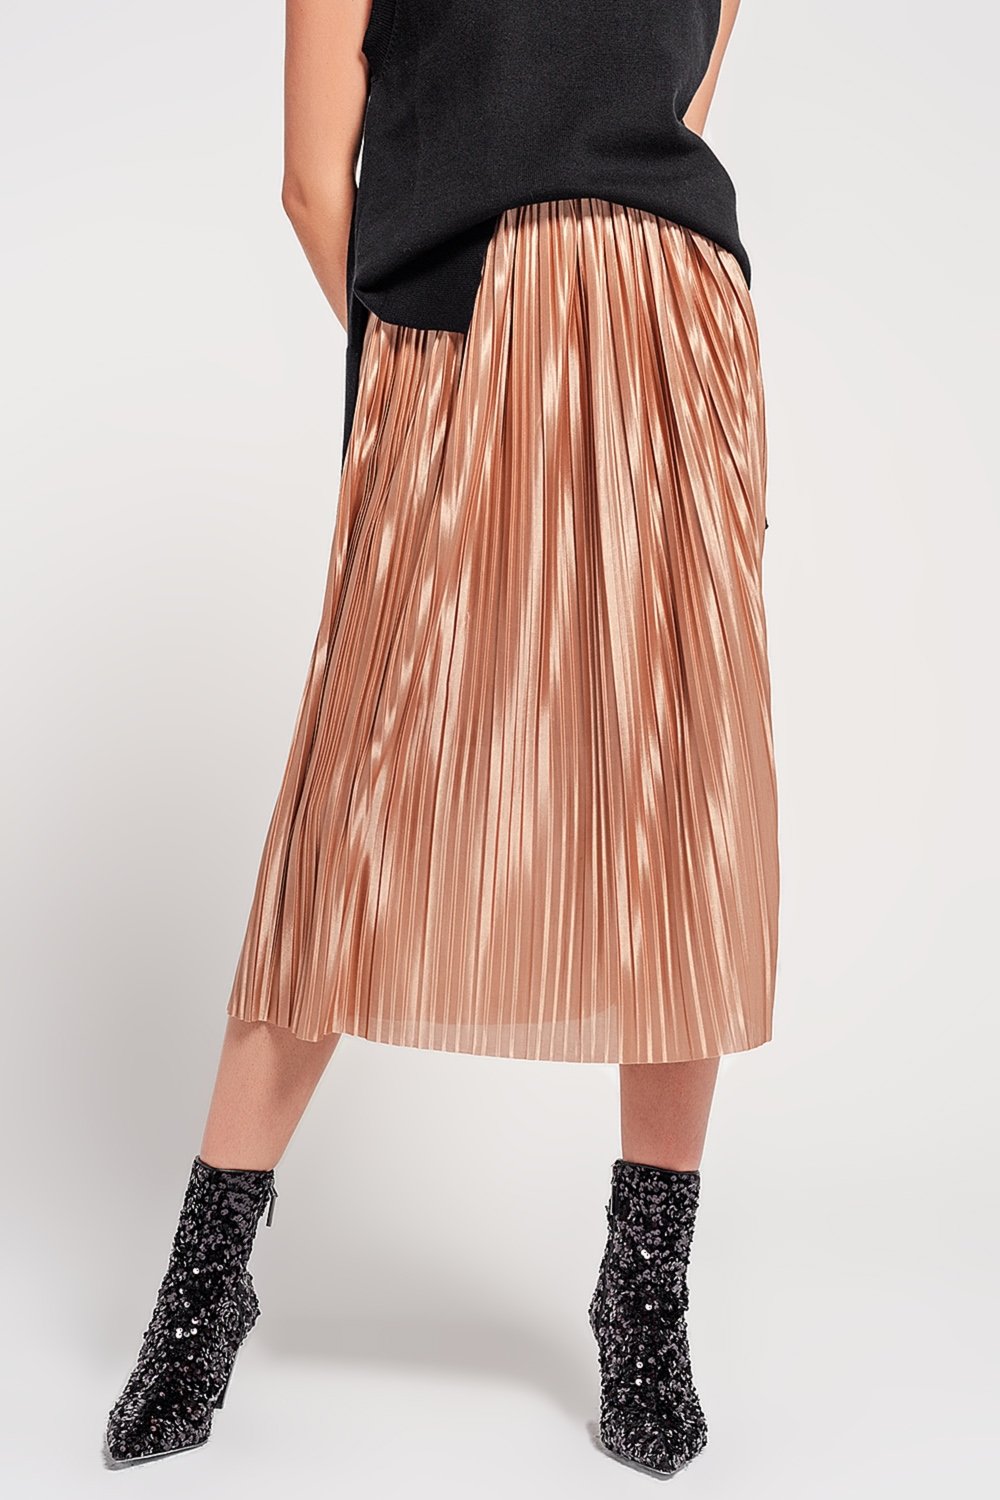 Shiny Gold Pleated Midi Skirt